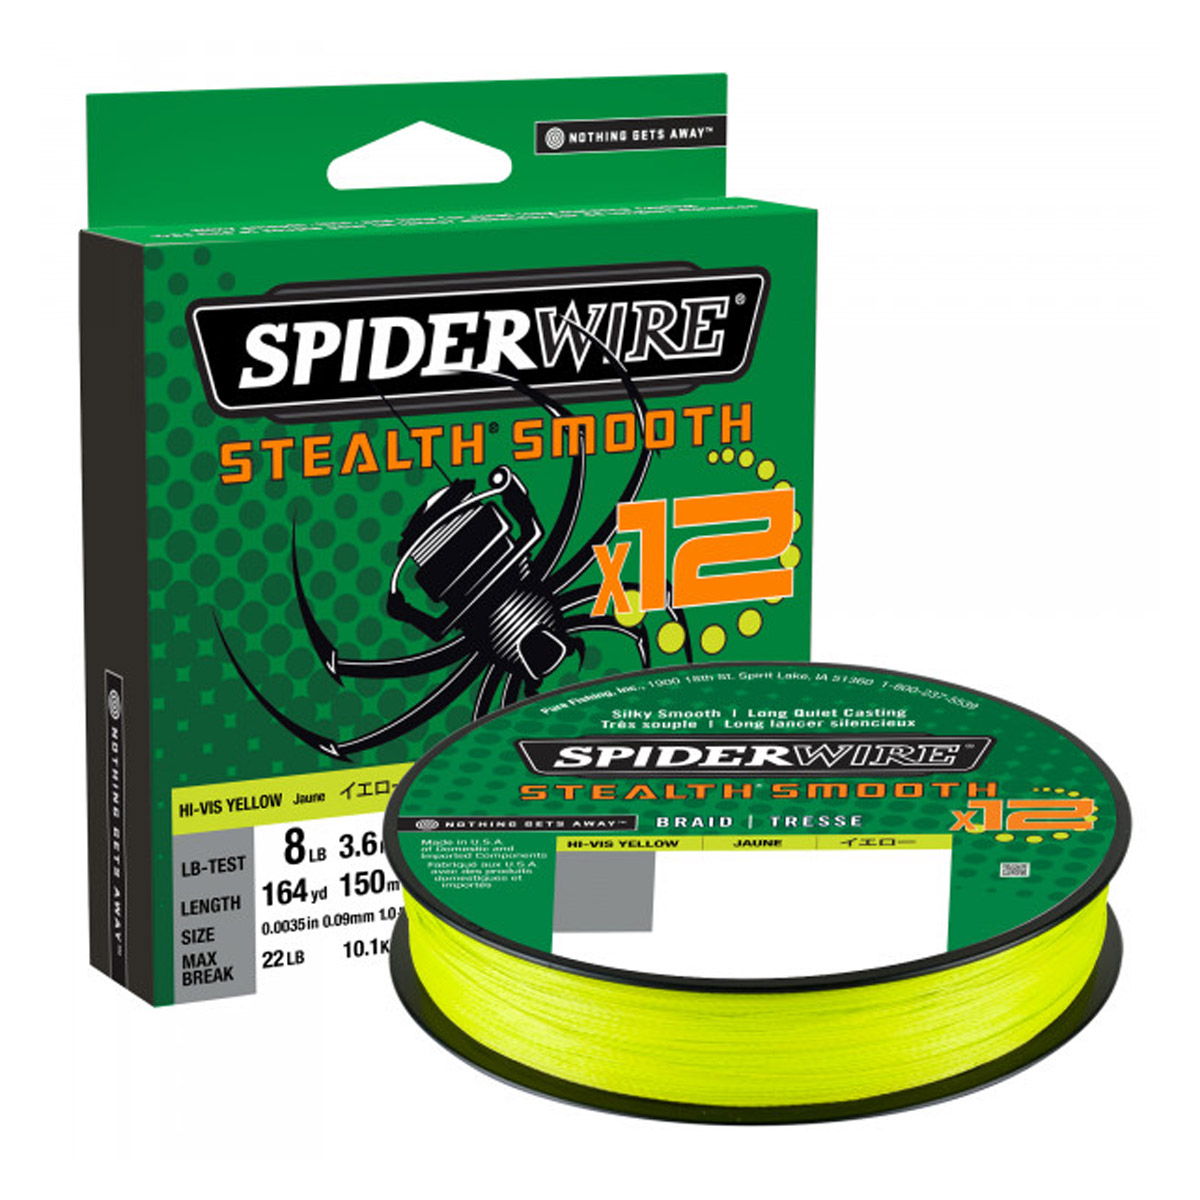 SpiderWire Stealth® Smooth 12 Braid Hi-Vis Yellow 150 M -  0.06 mm -  0.07 mm -  0.13 mm -  0.15 mm -  0.29 mm -  0.11 mm -  0.09 mm -  0.19 mm -  0.23 mm